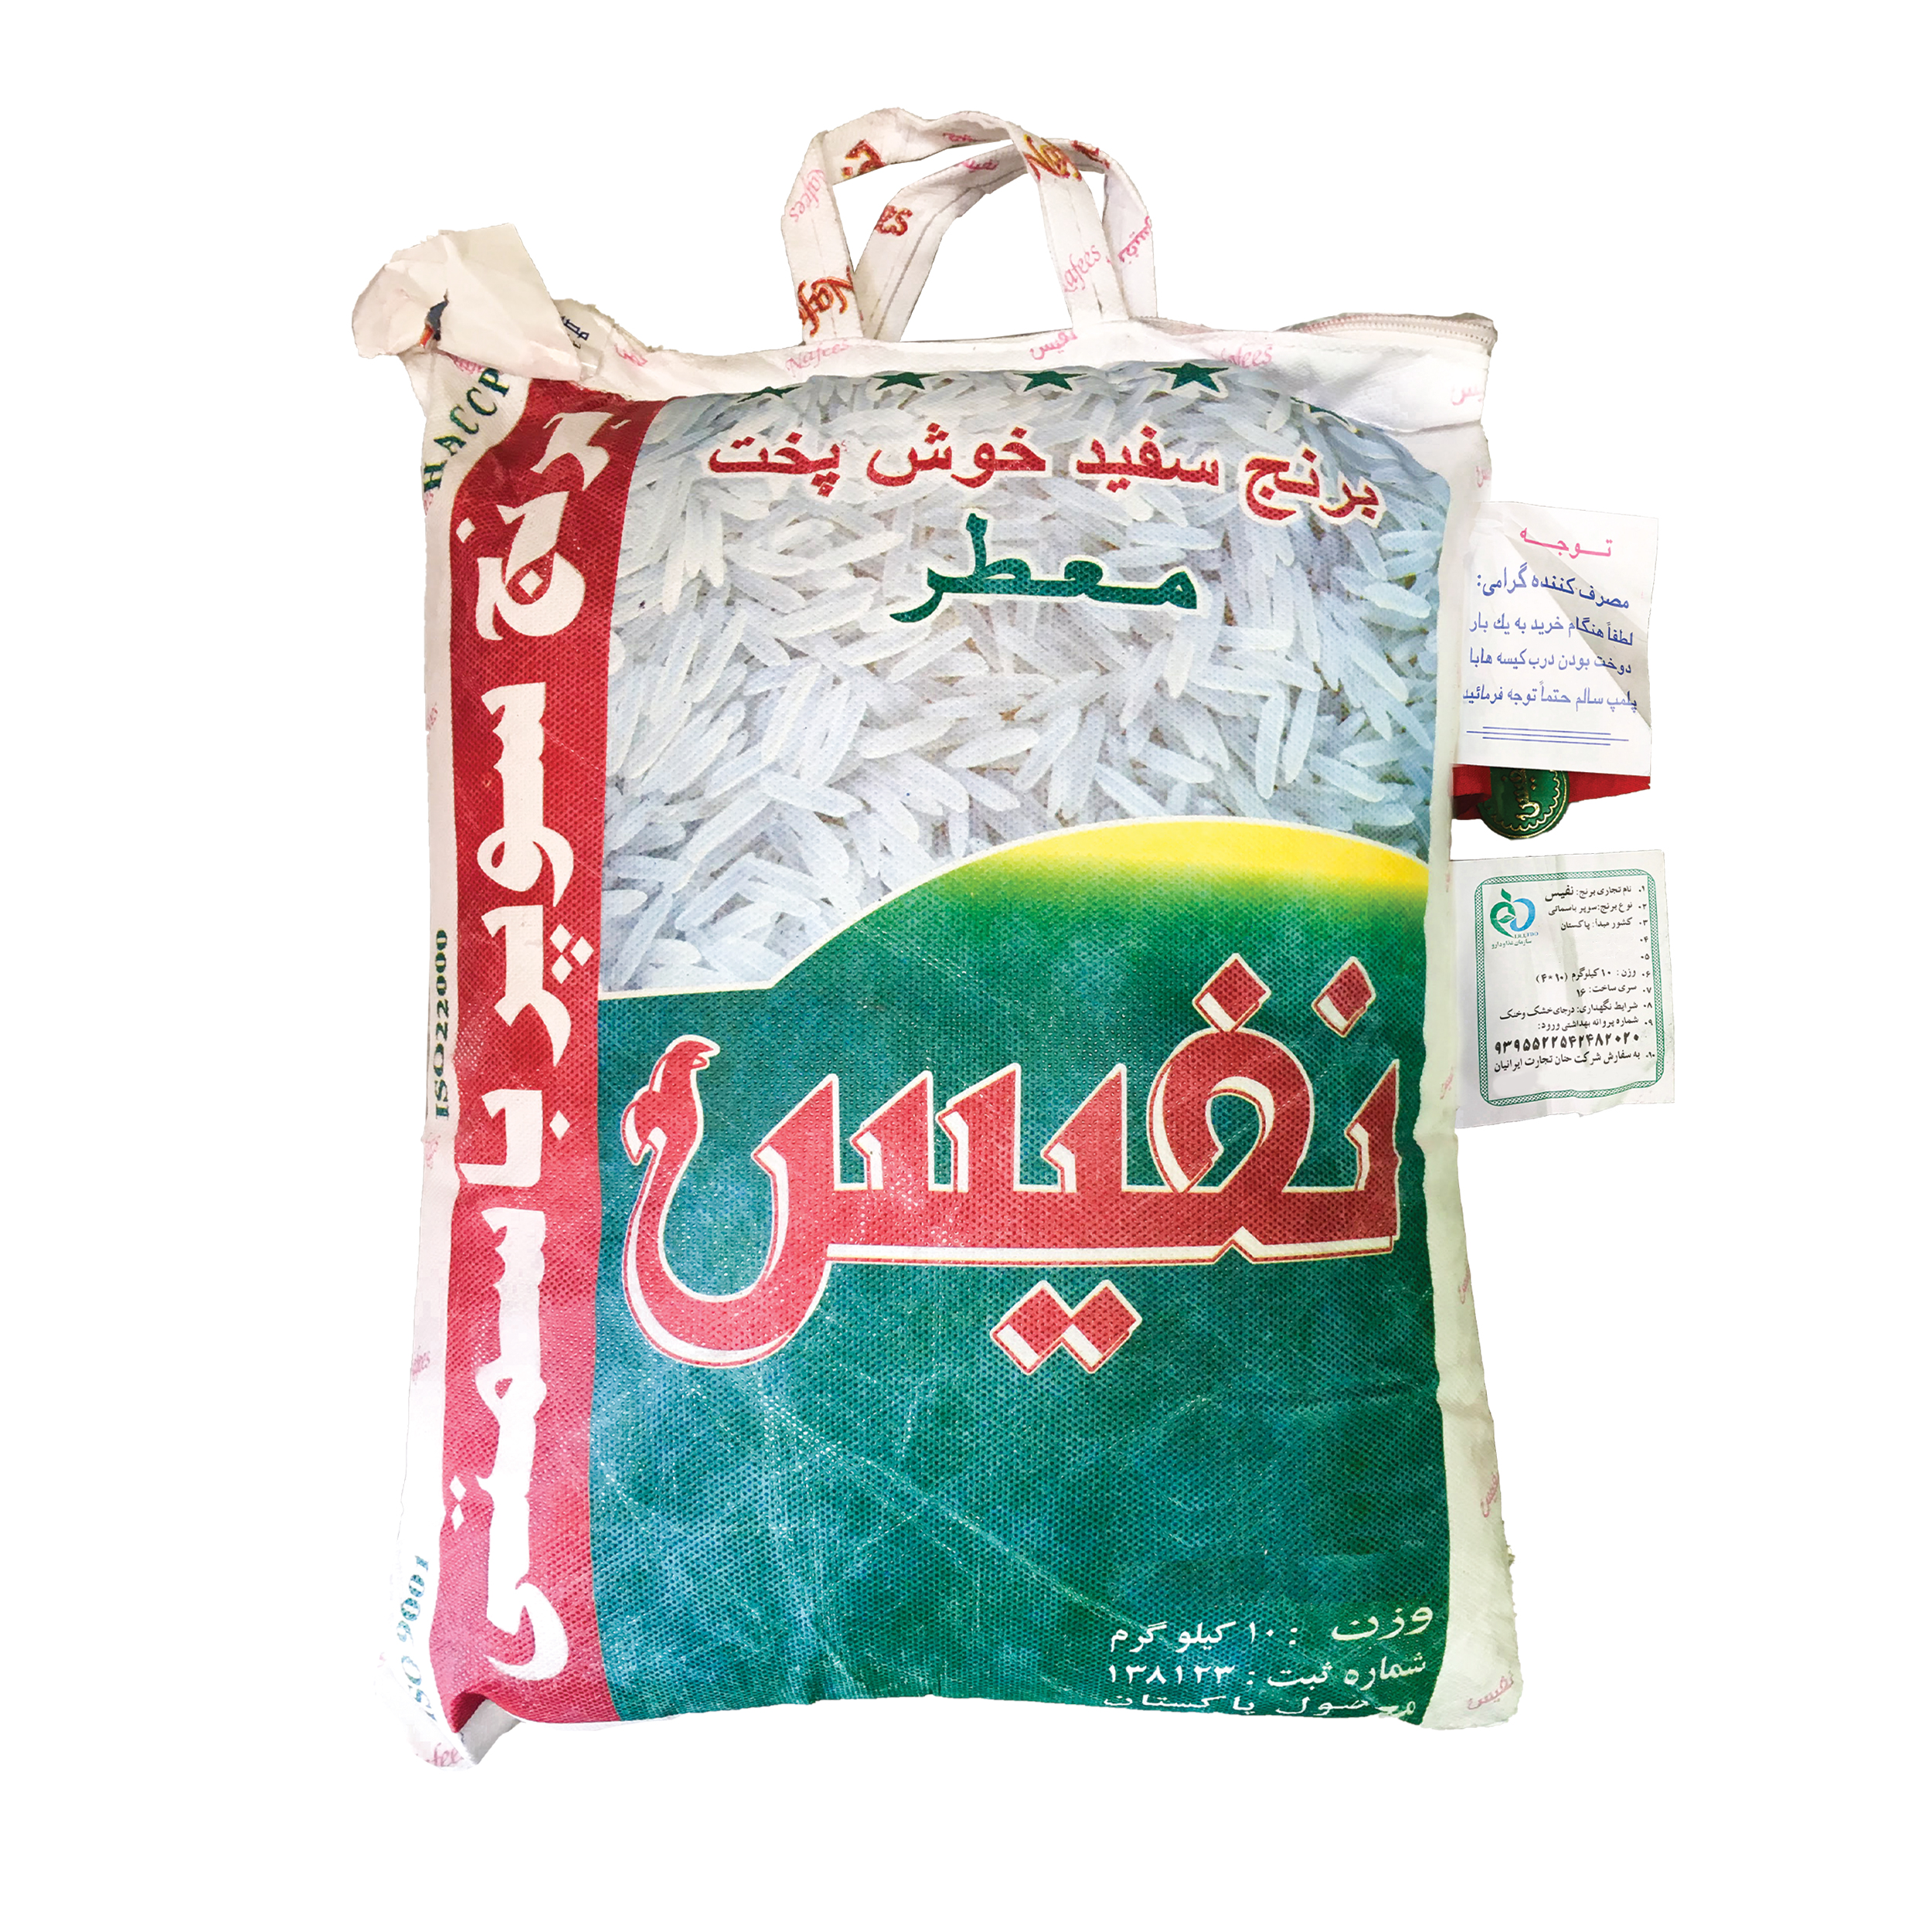 نکته خرید - قیمت روز برنج پاکستانی سوپر باسماتی نفیس - 10 کیلوگرم خرید